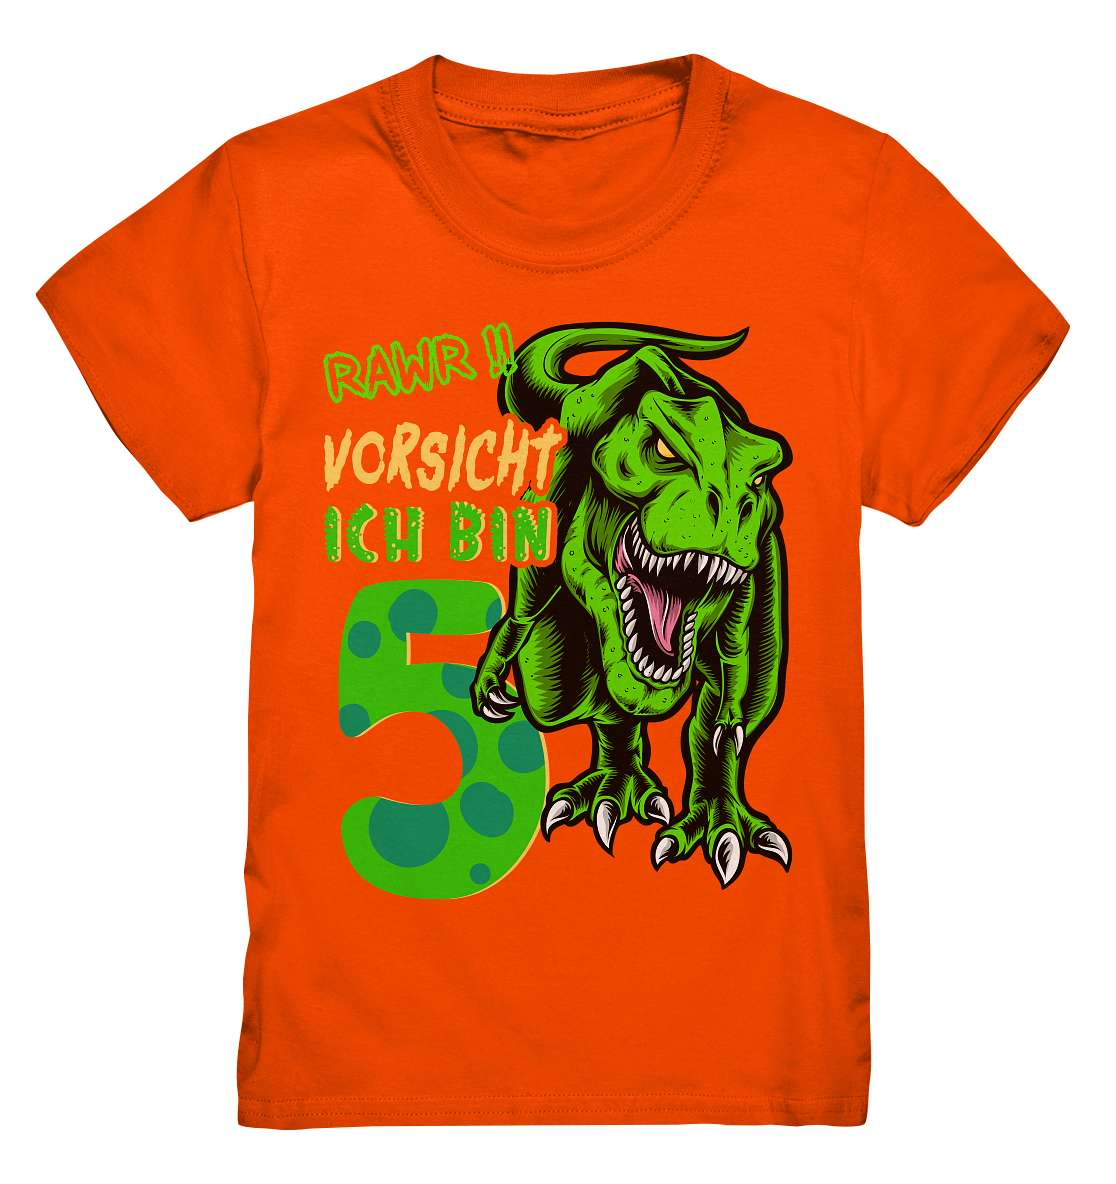 5. Kinder Geburtstag - T-REX Dinosaurier - Ich bin 5 Jahre - Geschenk - Kids Premium Shirt